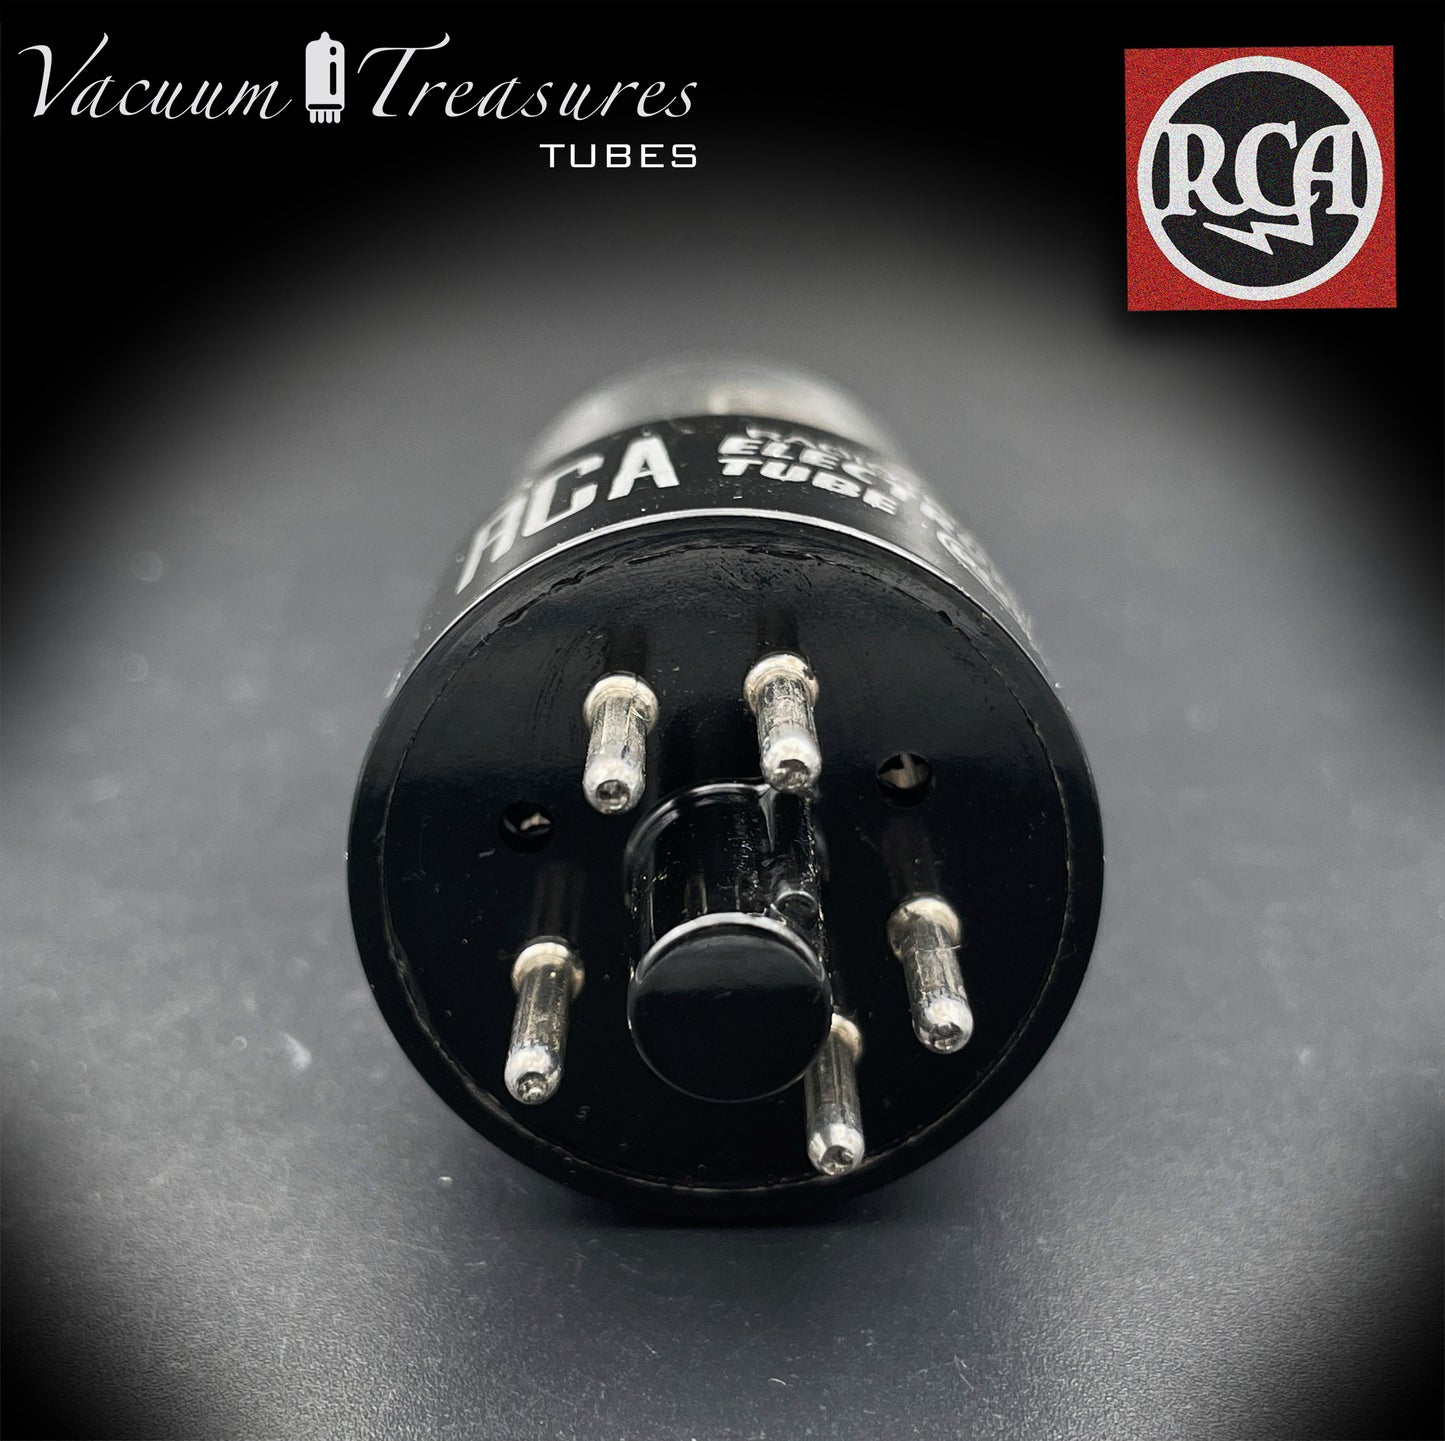 6X5 GT (6Z5P) RCA NOS NIB, schwarze Platten, quadratische Getter-Gleichrichterröhre, hergestellt in den USA